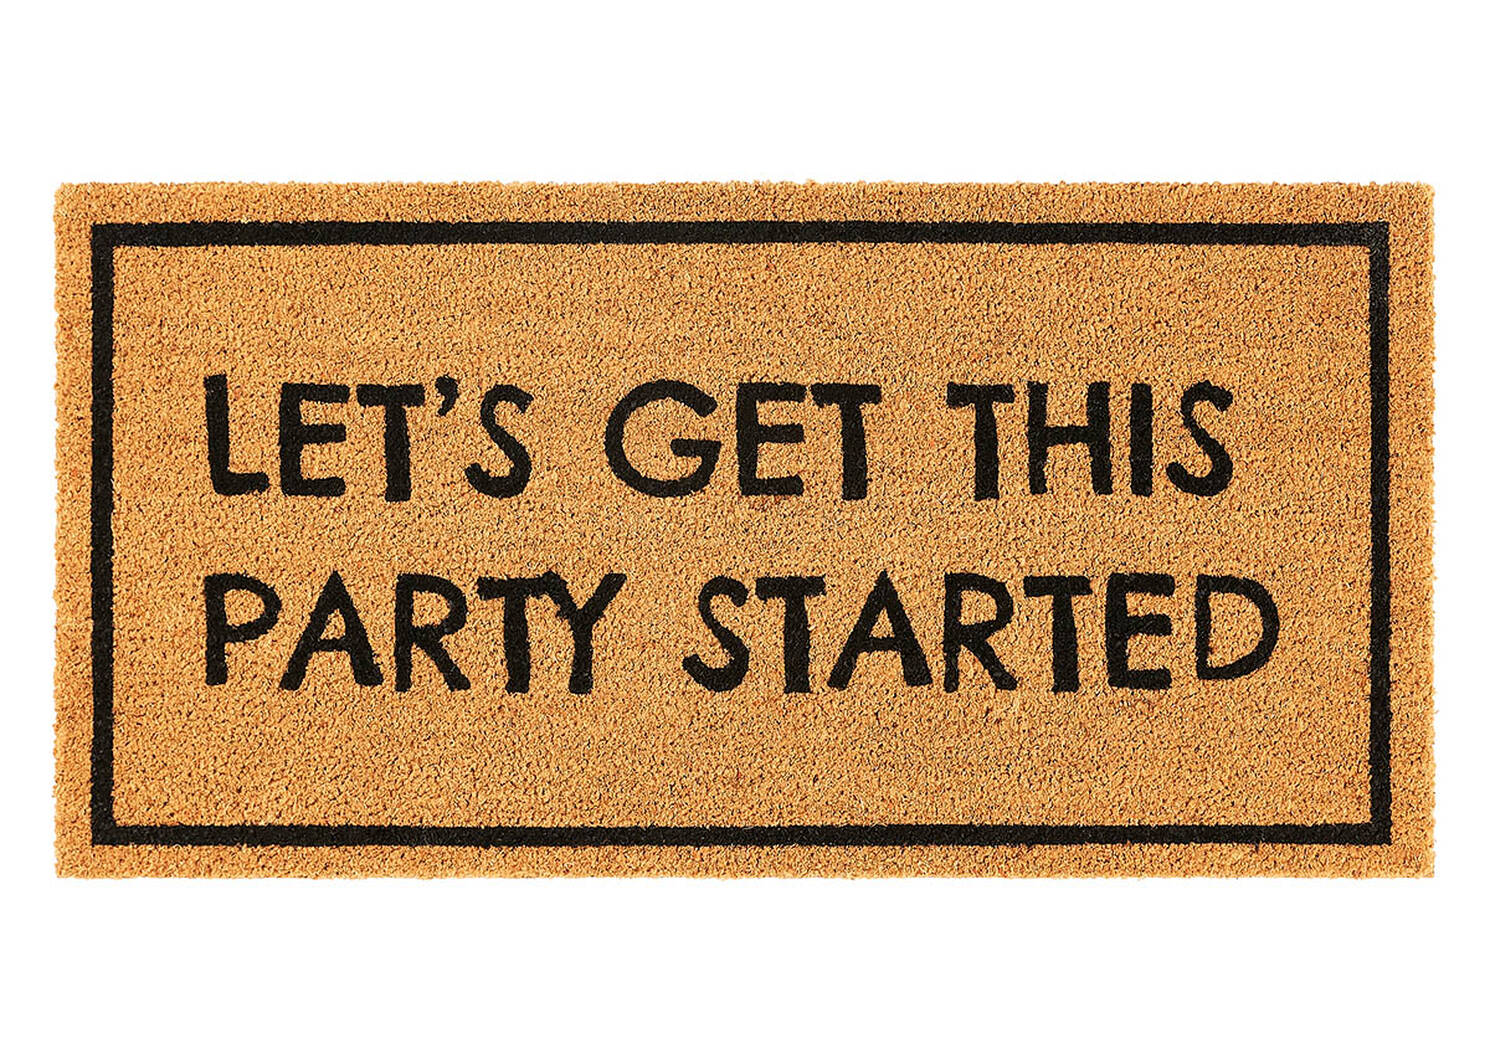 Party Started Doormat